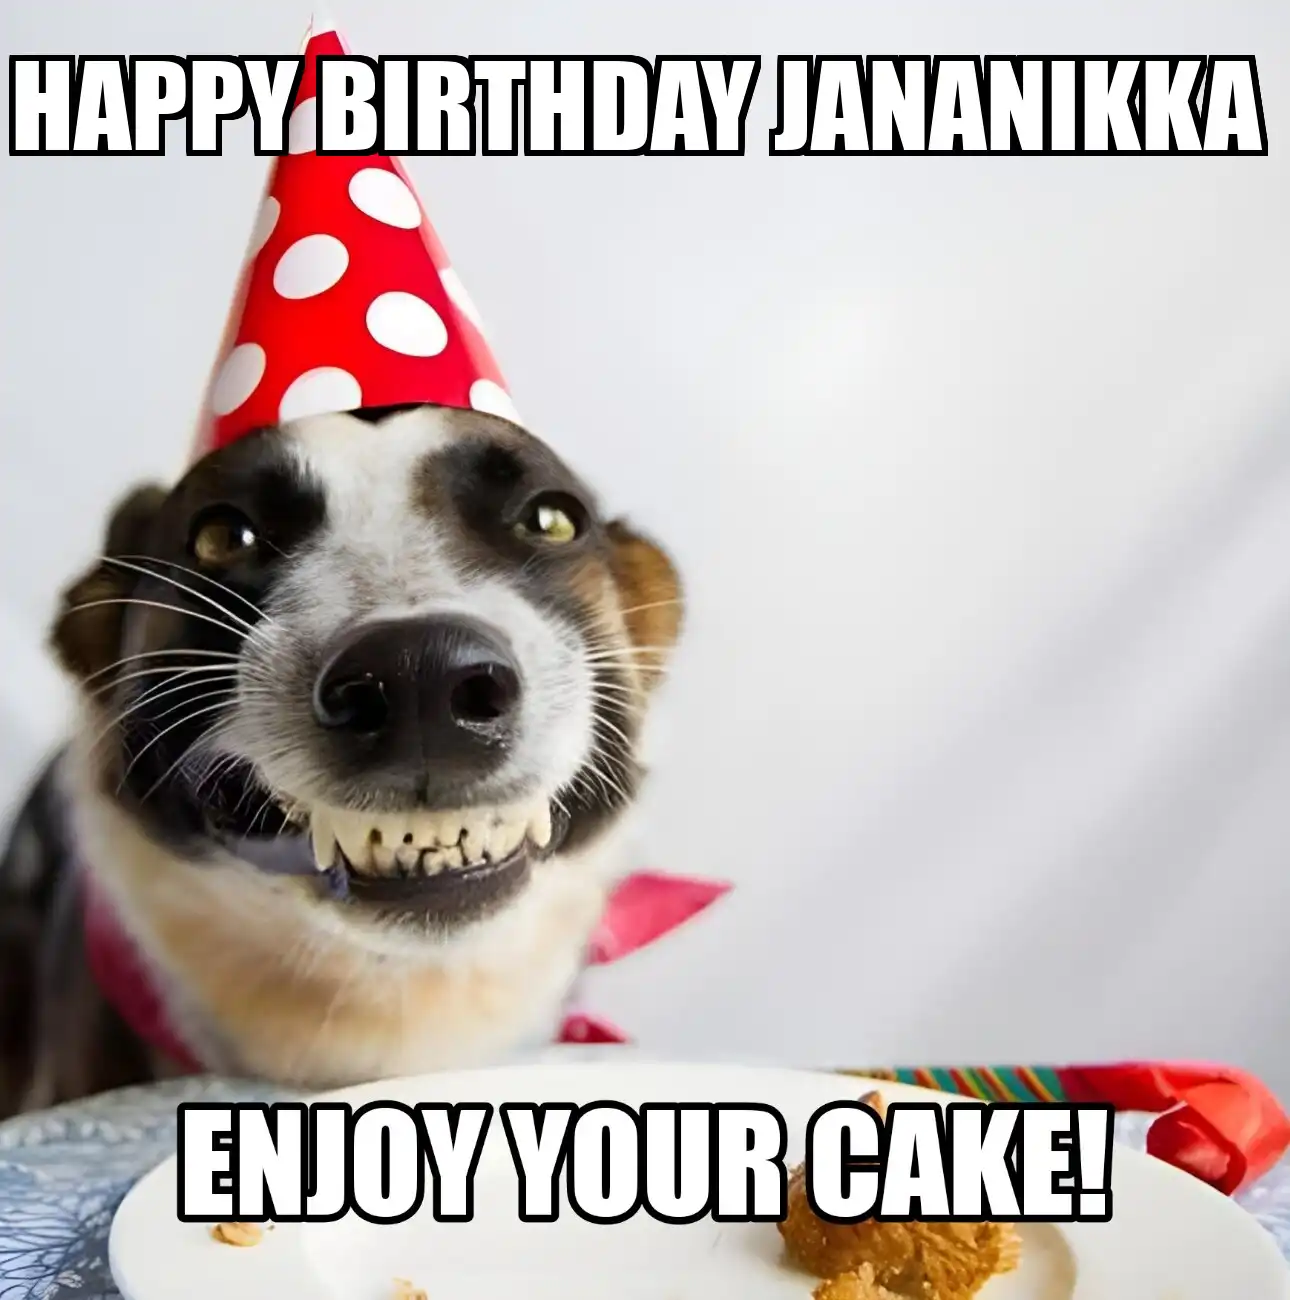 Happy Birthday Jananikka Enjoy Your Cake Dog Meme